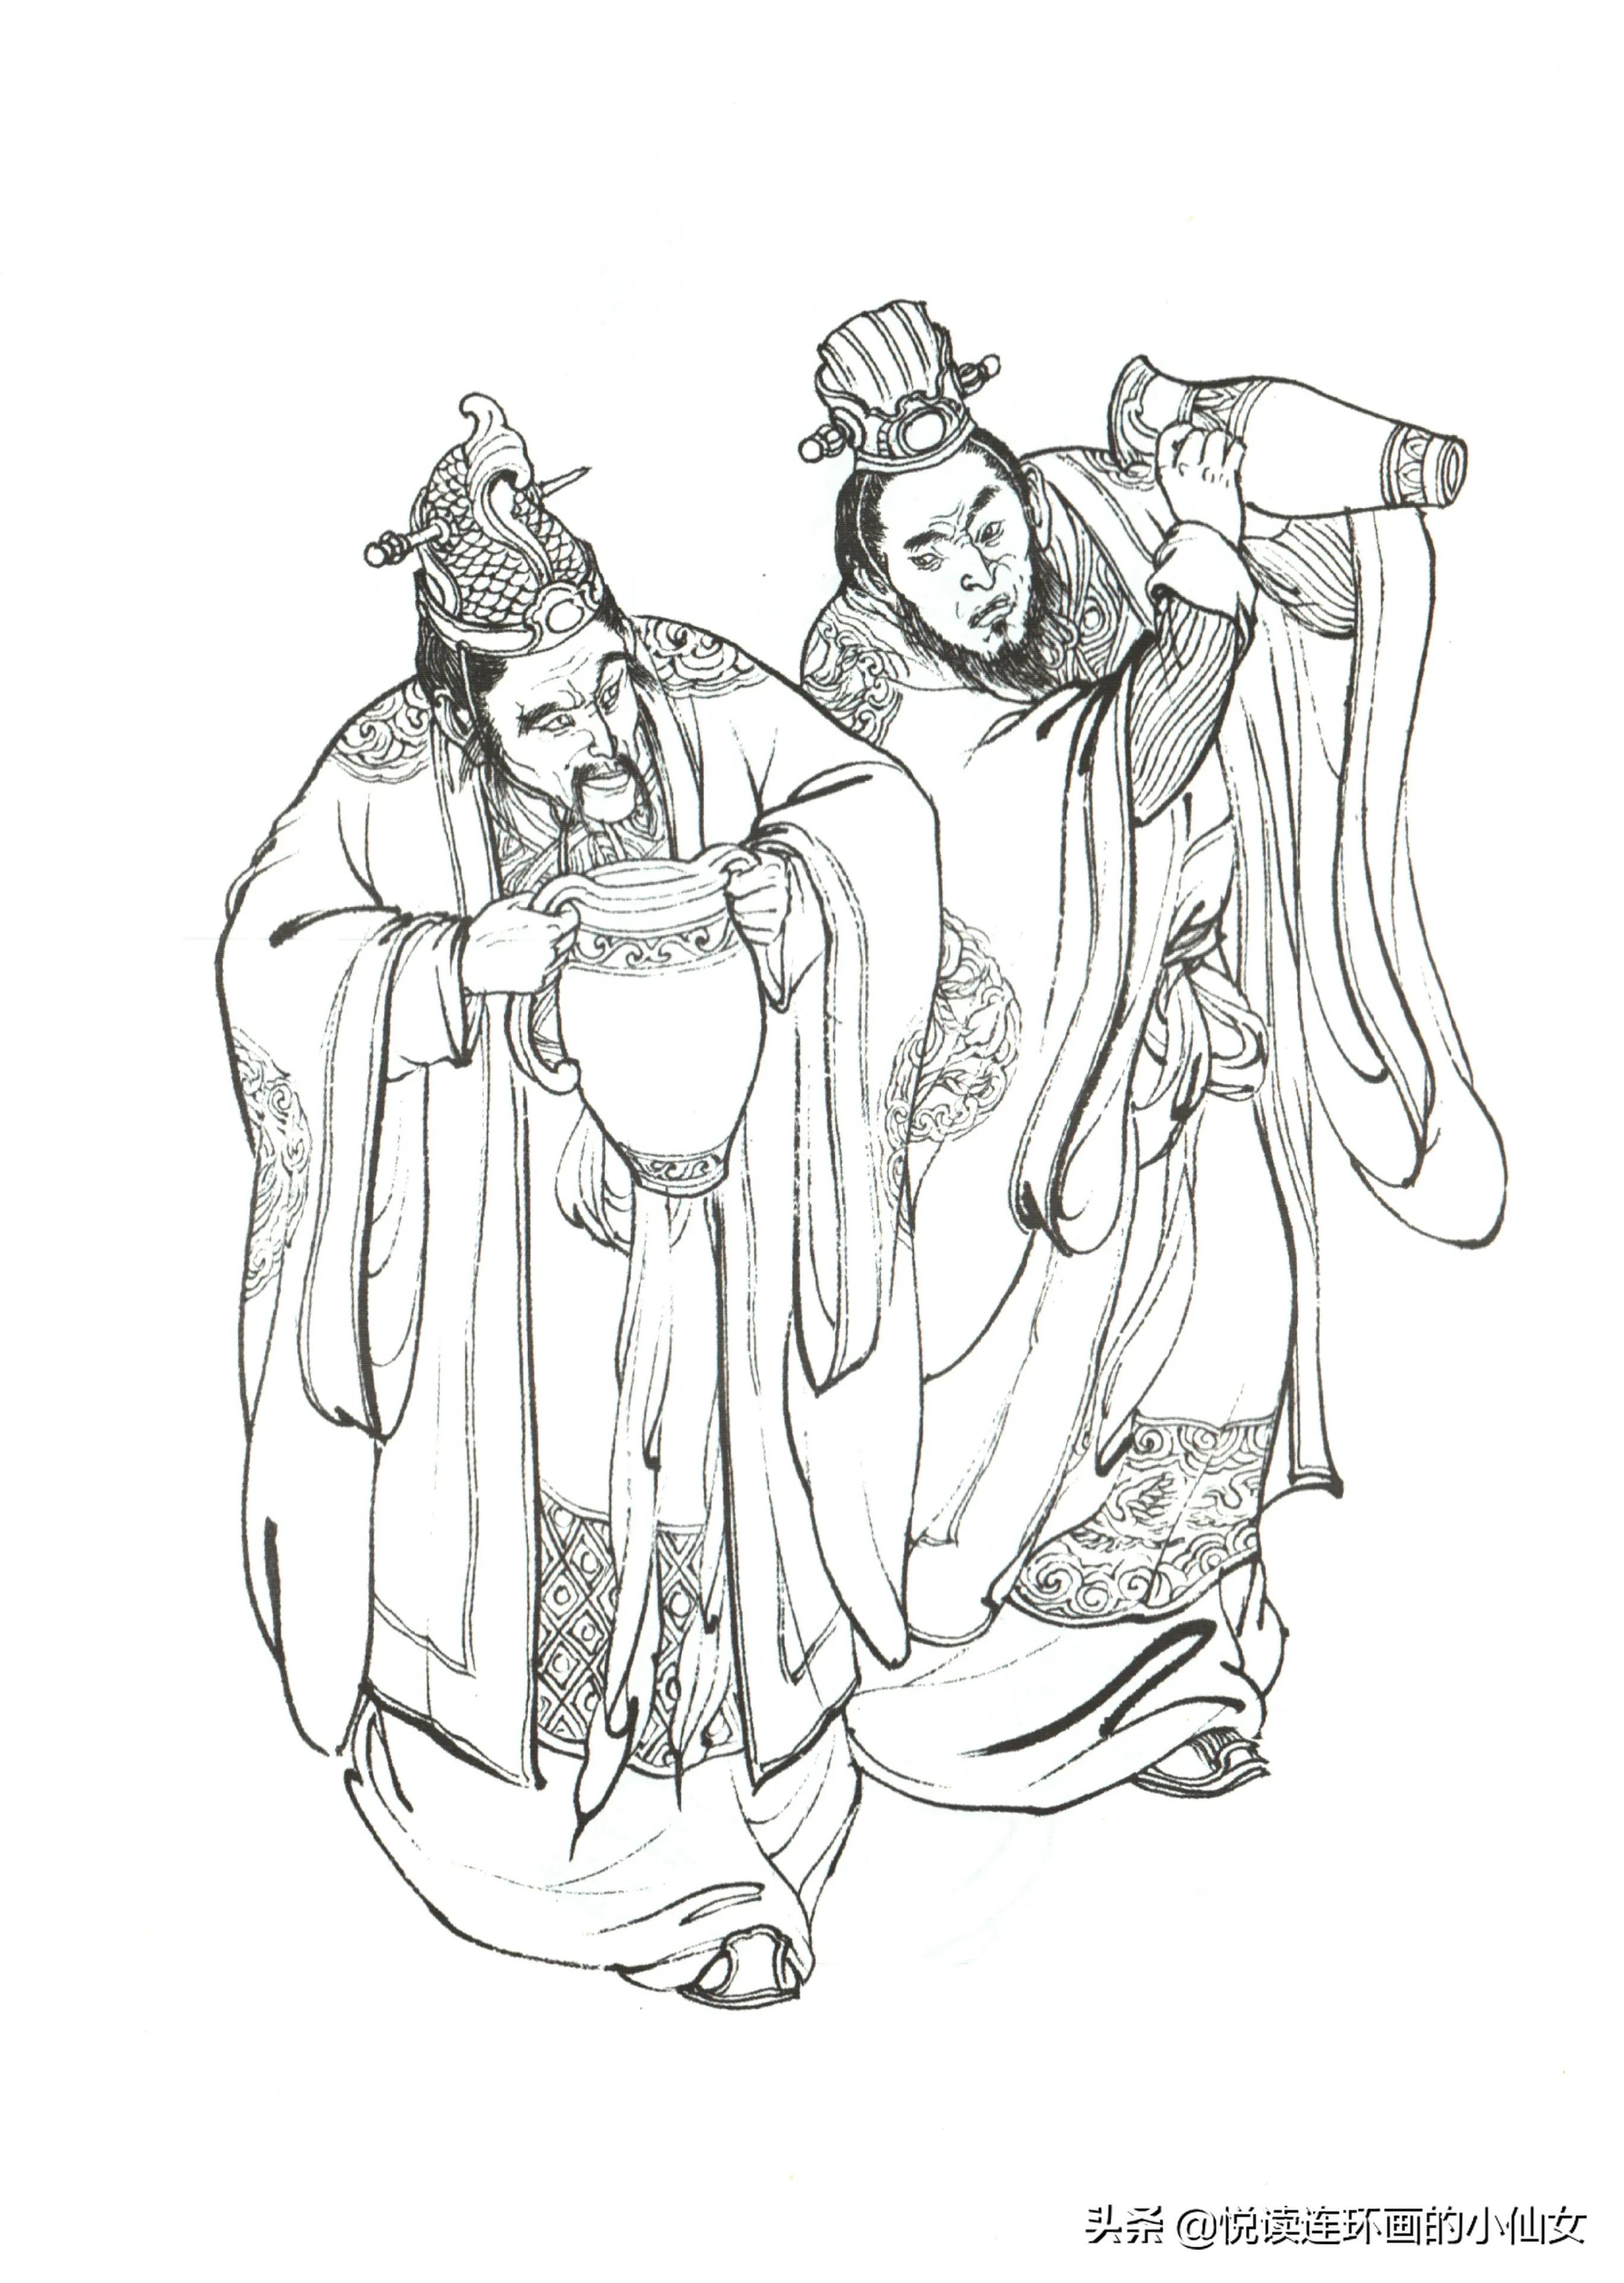 西游记神魔人物画谱，李云中绘插图(146)